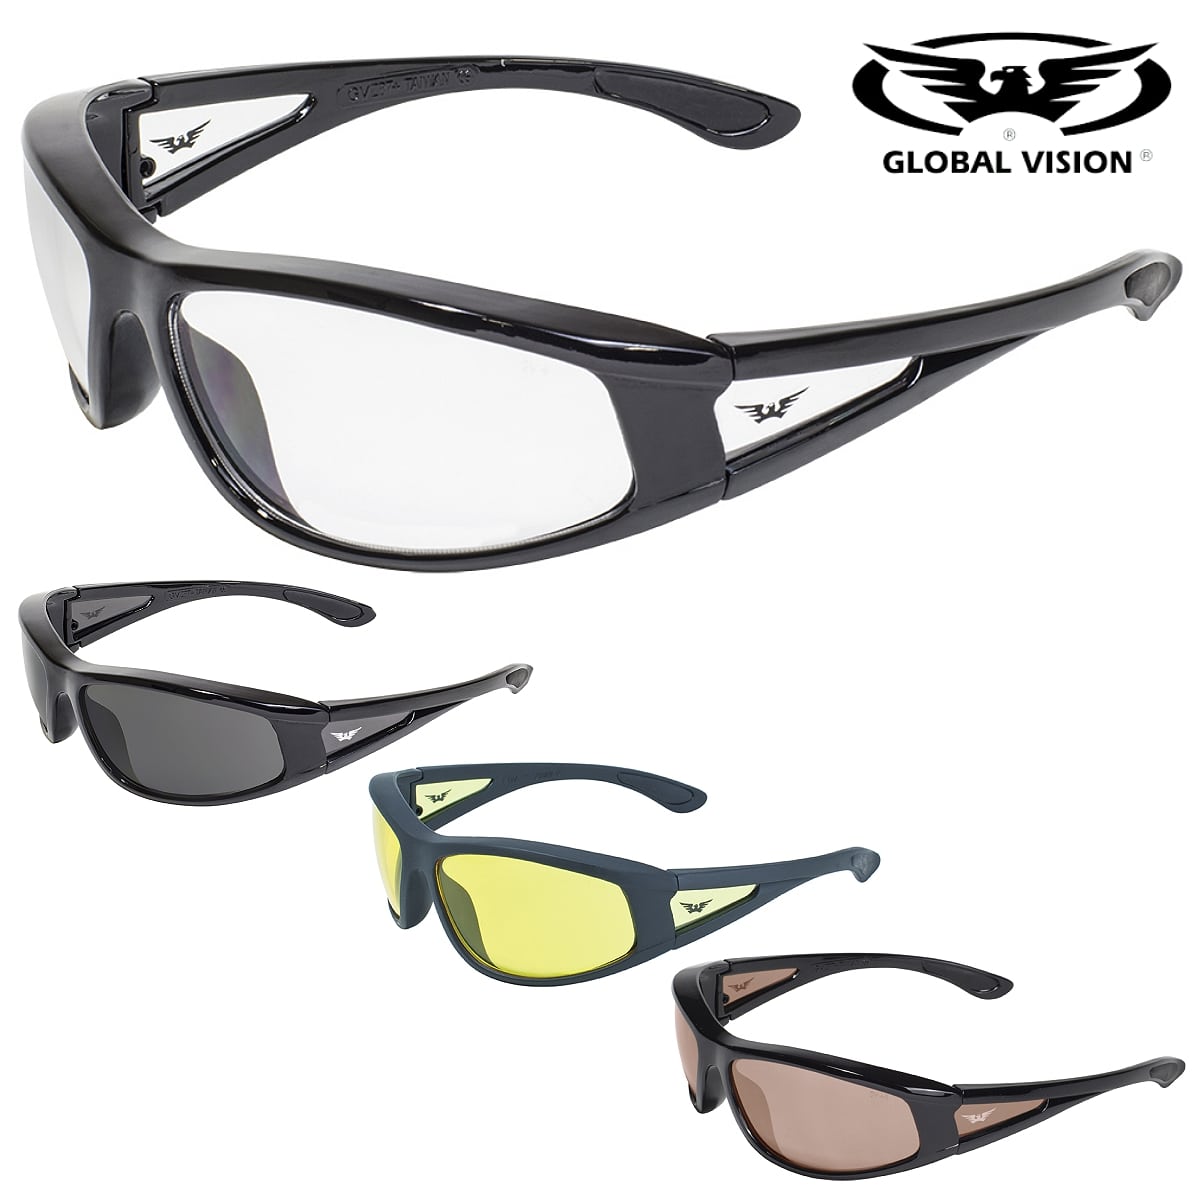 GLOBAL VISION バイク サングラス ゴーグル Integrity Sunglass 米国直輸入! レンズカラー全4色! ブラックフレーム 選べるツヤありなし! グローバルビジョン インテグリティ2 ANSI Z87.1 規格適合 UV400 飛散防止加工 耐擦傷 Motorcycle Safety Sunglasses自転車